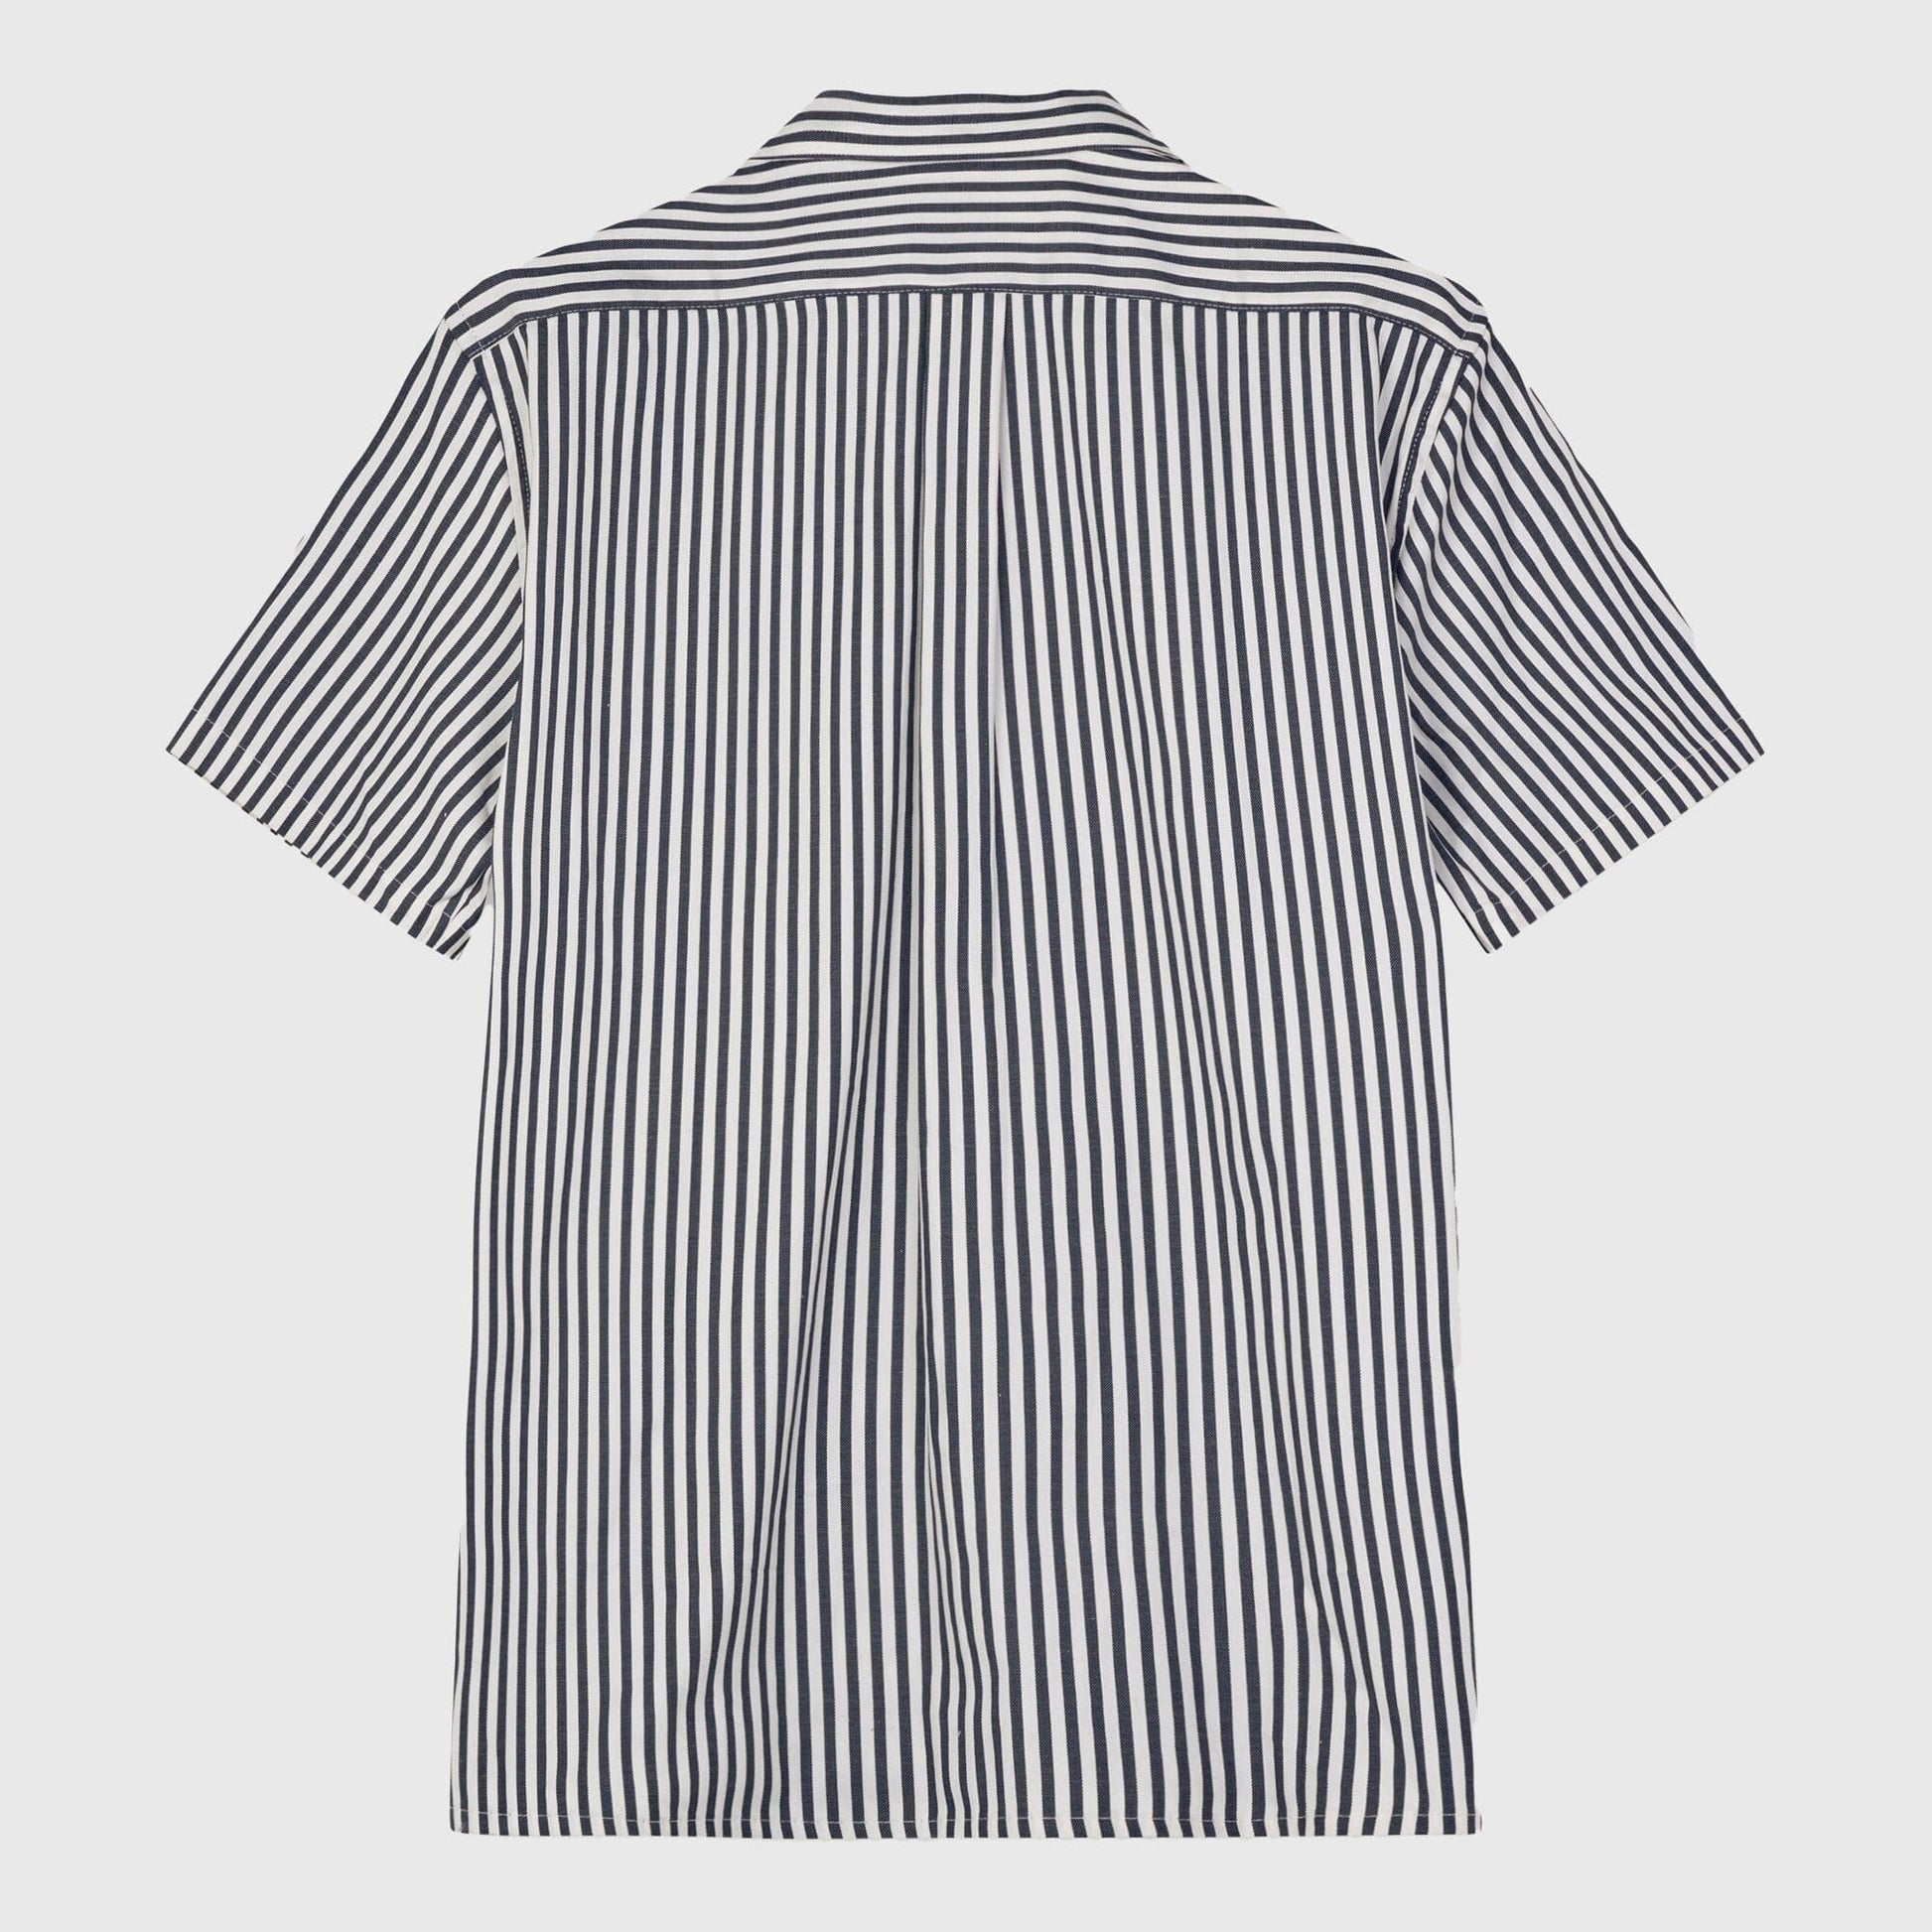 Libertine-Libertine Cave Shirt - Dark Navy Stripe Shirt Libertine-Libertine 